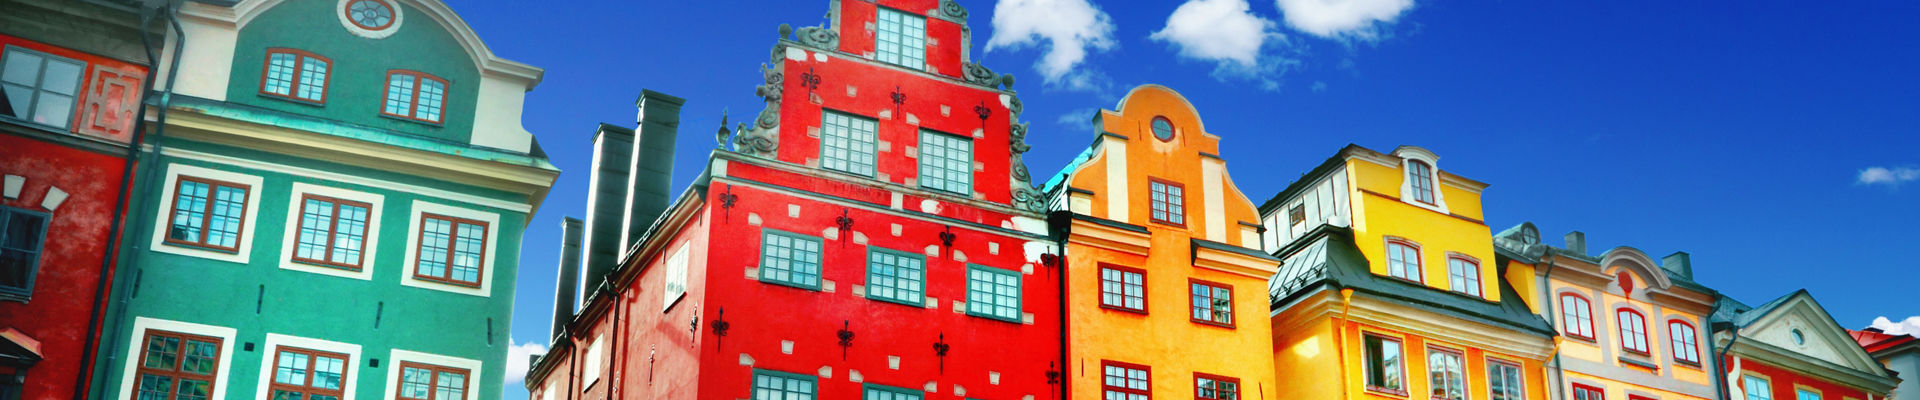 Coloridos frentes de edificios en calles históricas